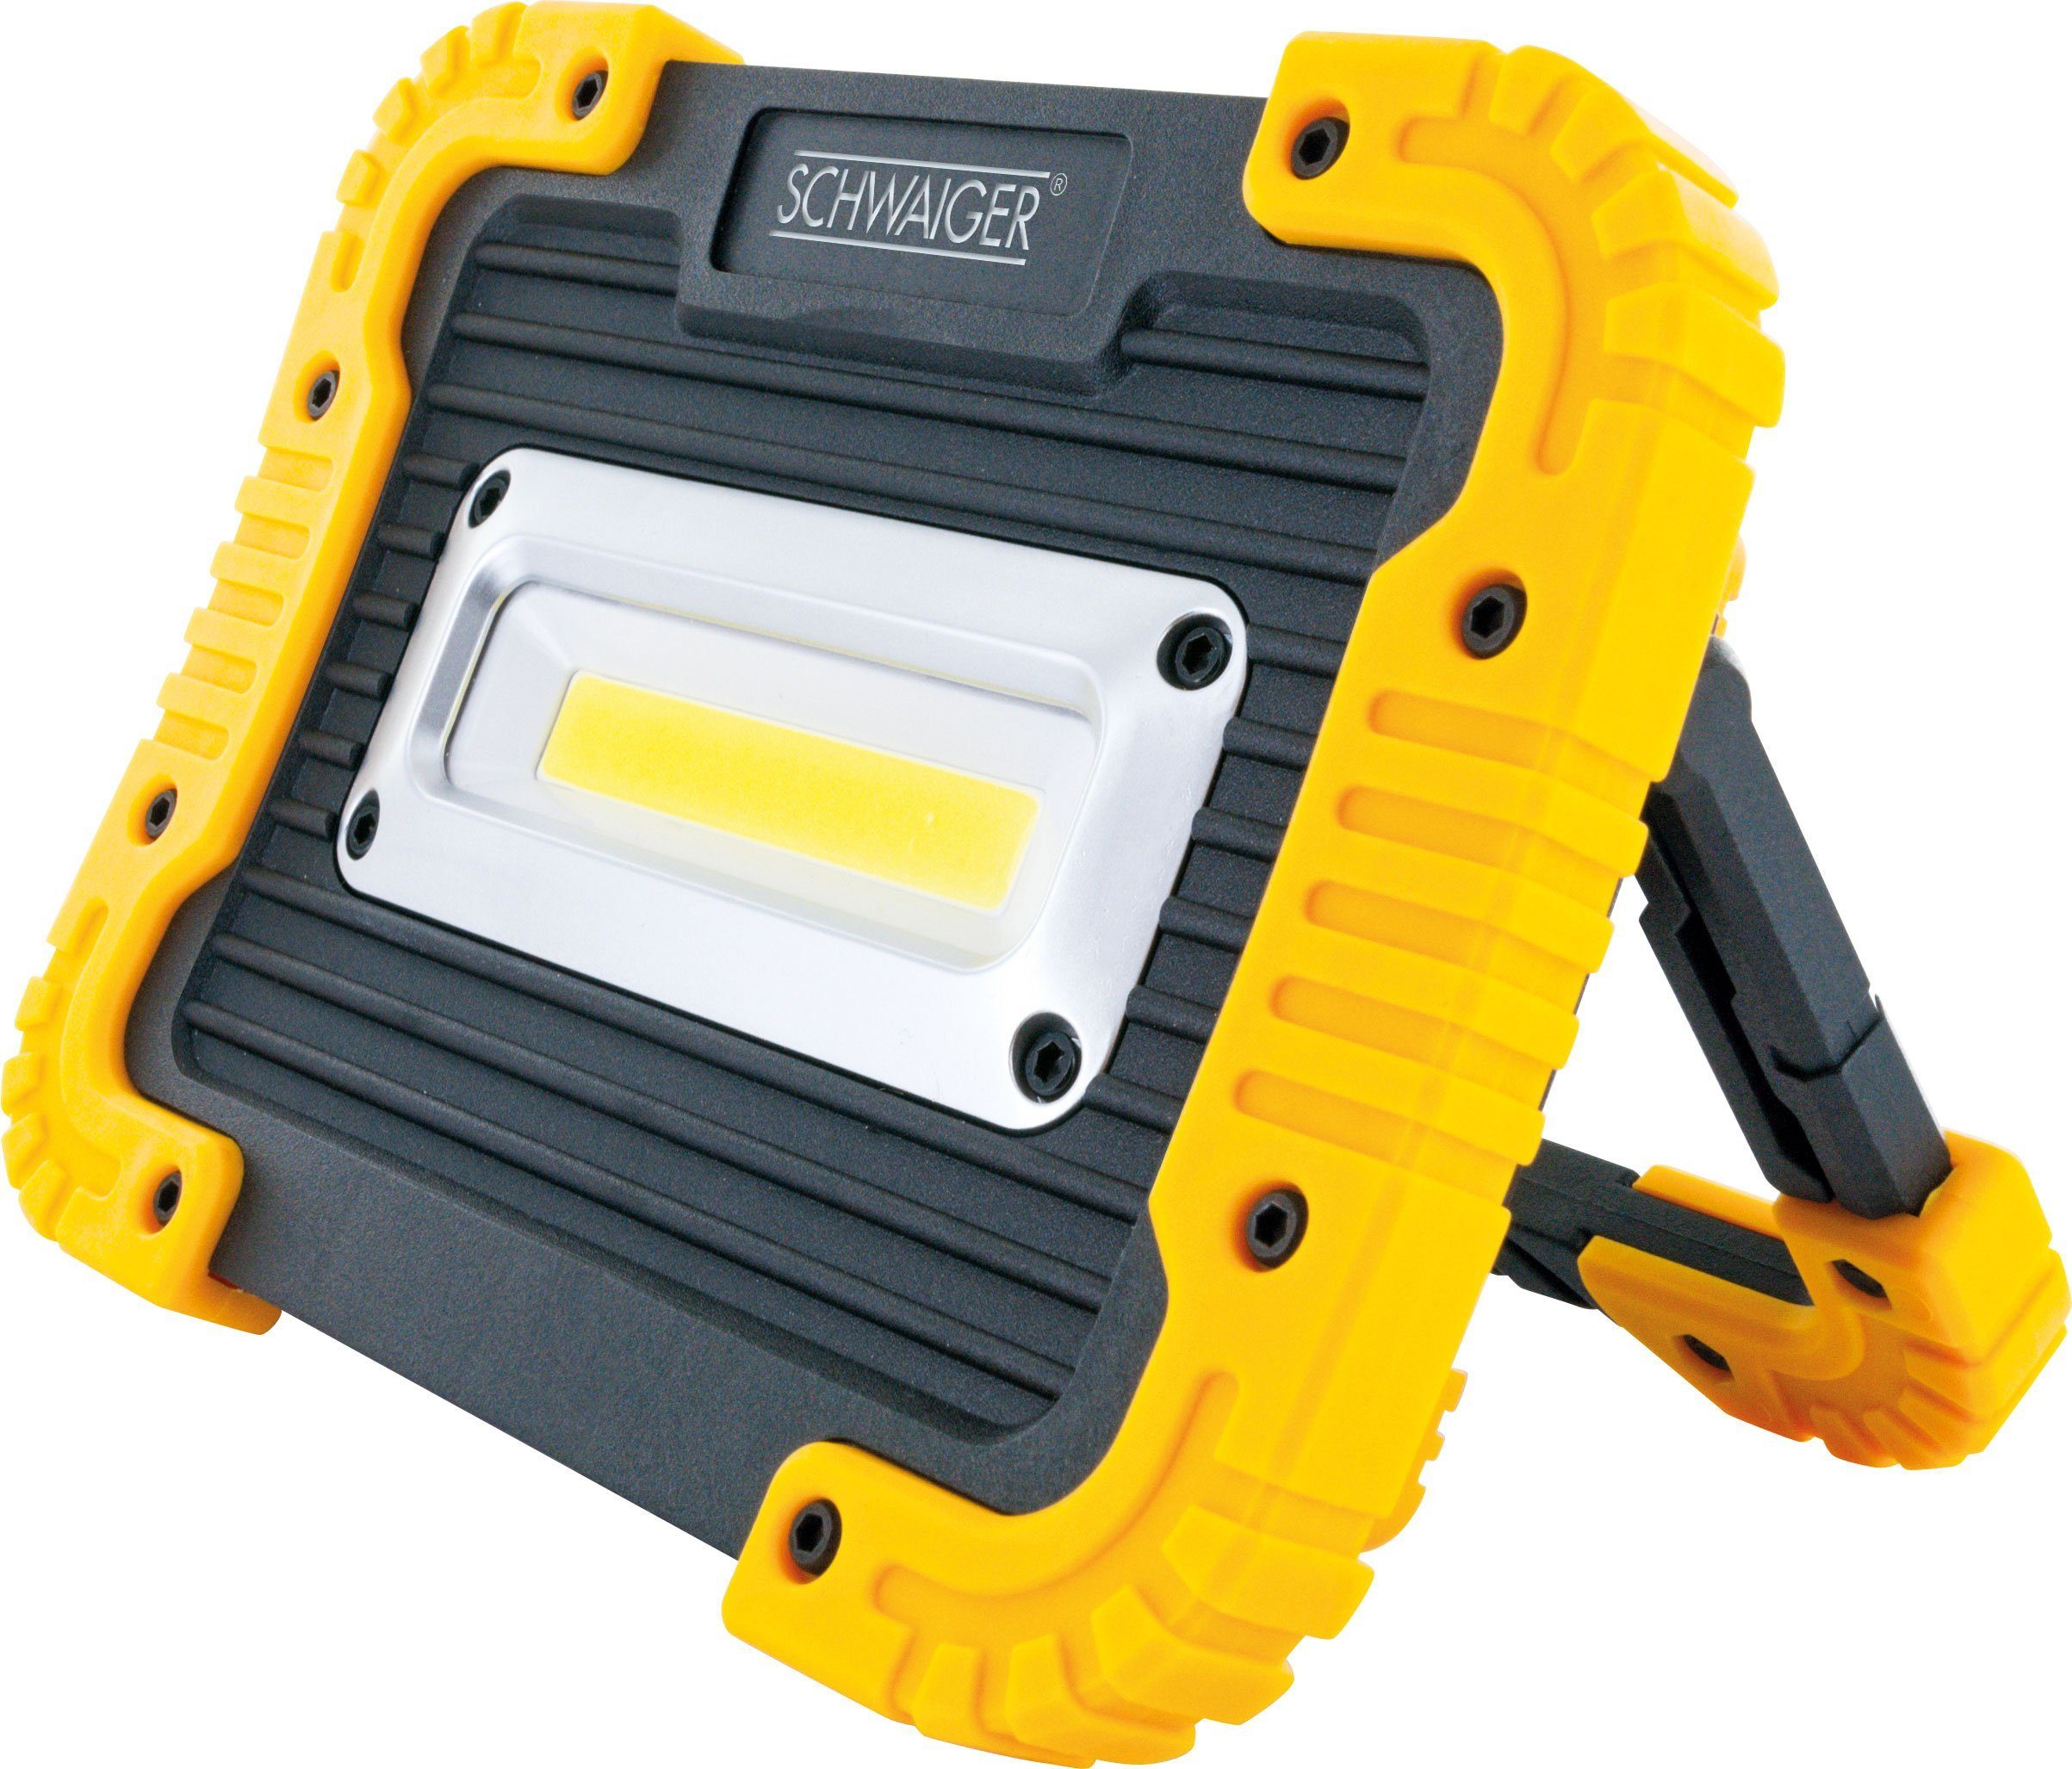 Schwaiger LED Arbeitsleuchte WLED90 513, COB-LED, Weiß, mehrstufig einstellbarer Standfuß, batteriebetrieben